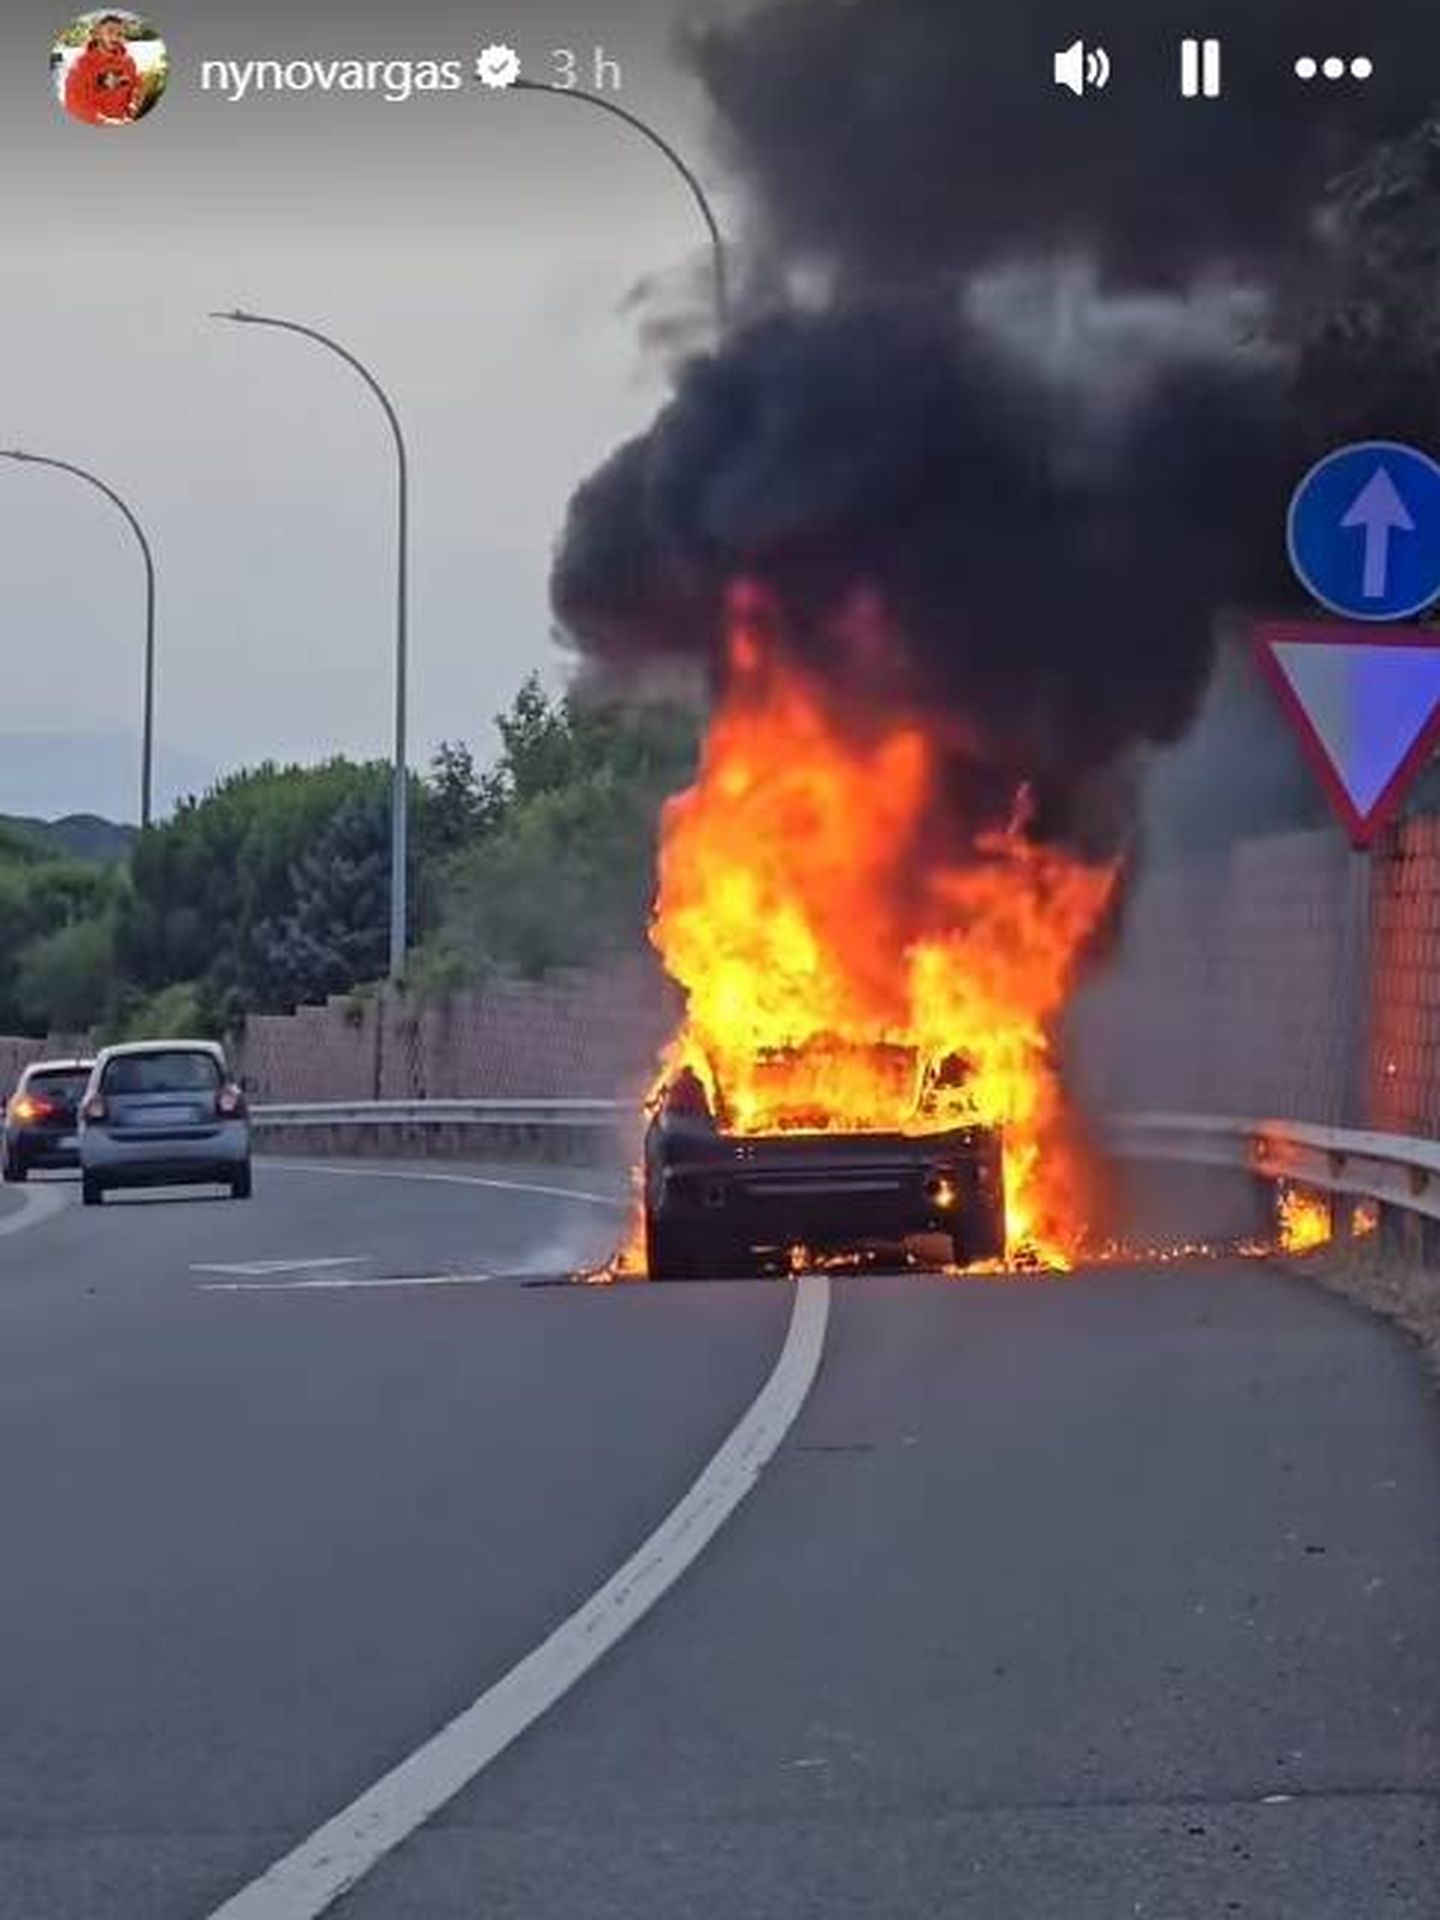 El coche de Nyno Vargas pasto de las llamas. (Instagram/@nynovargas)